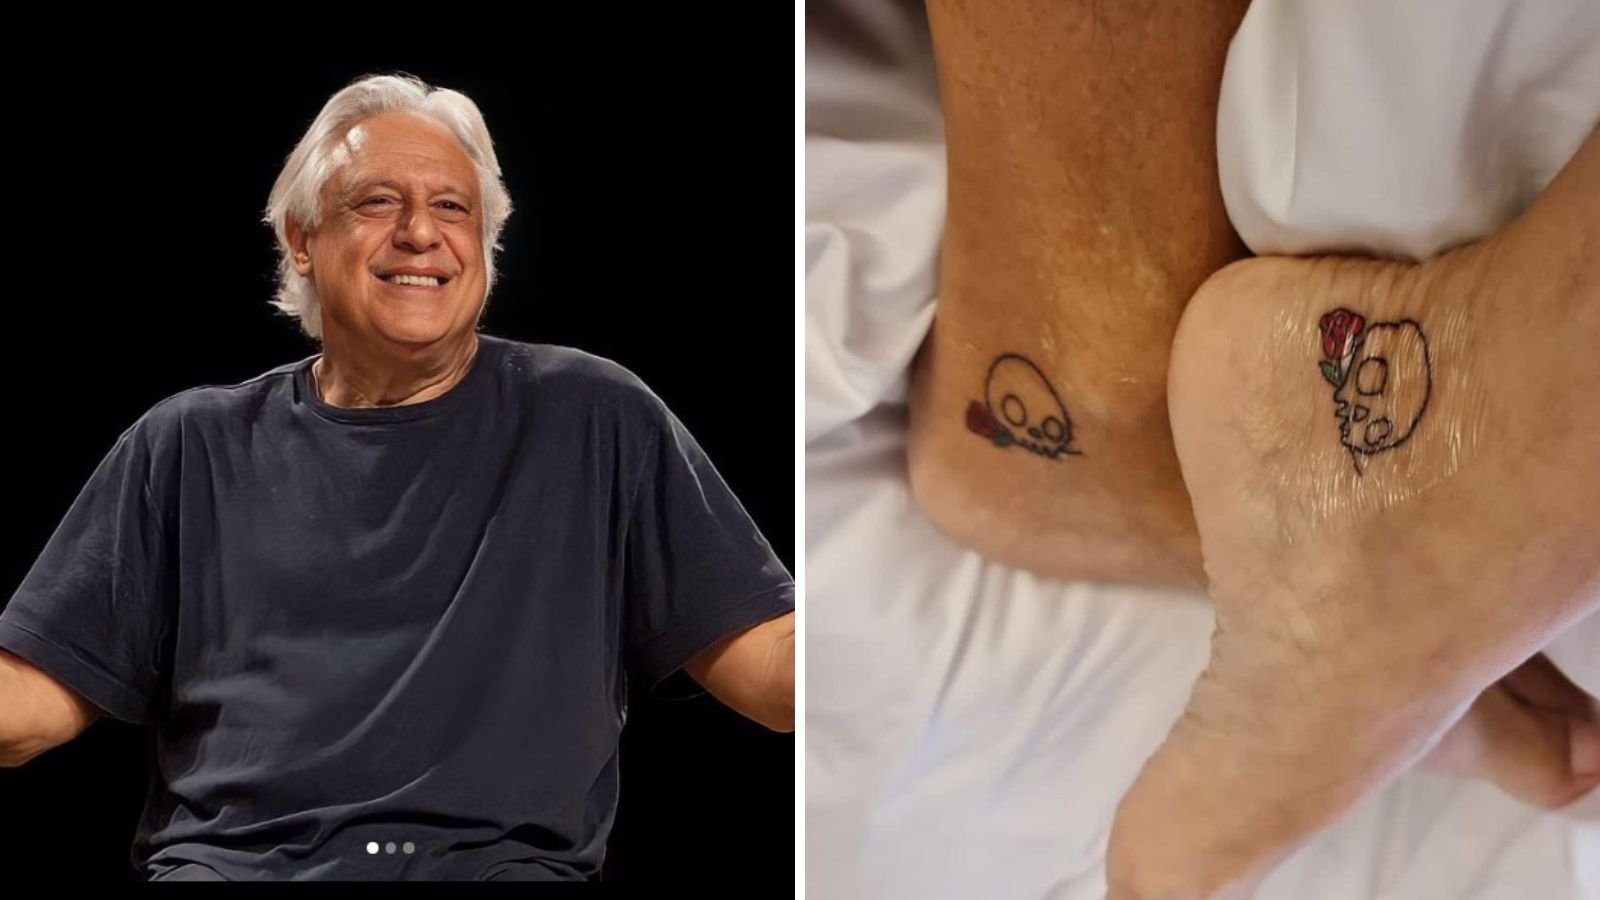 Antonio Fagundes faz tatuagem com esposa e se diverte: ‘Primeira e última’